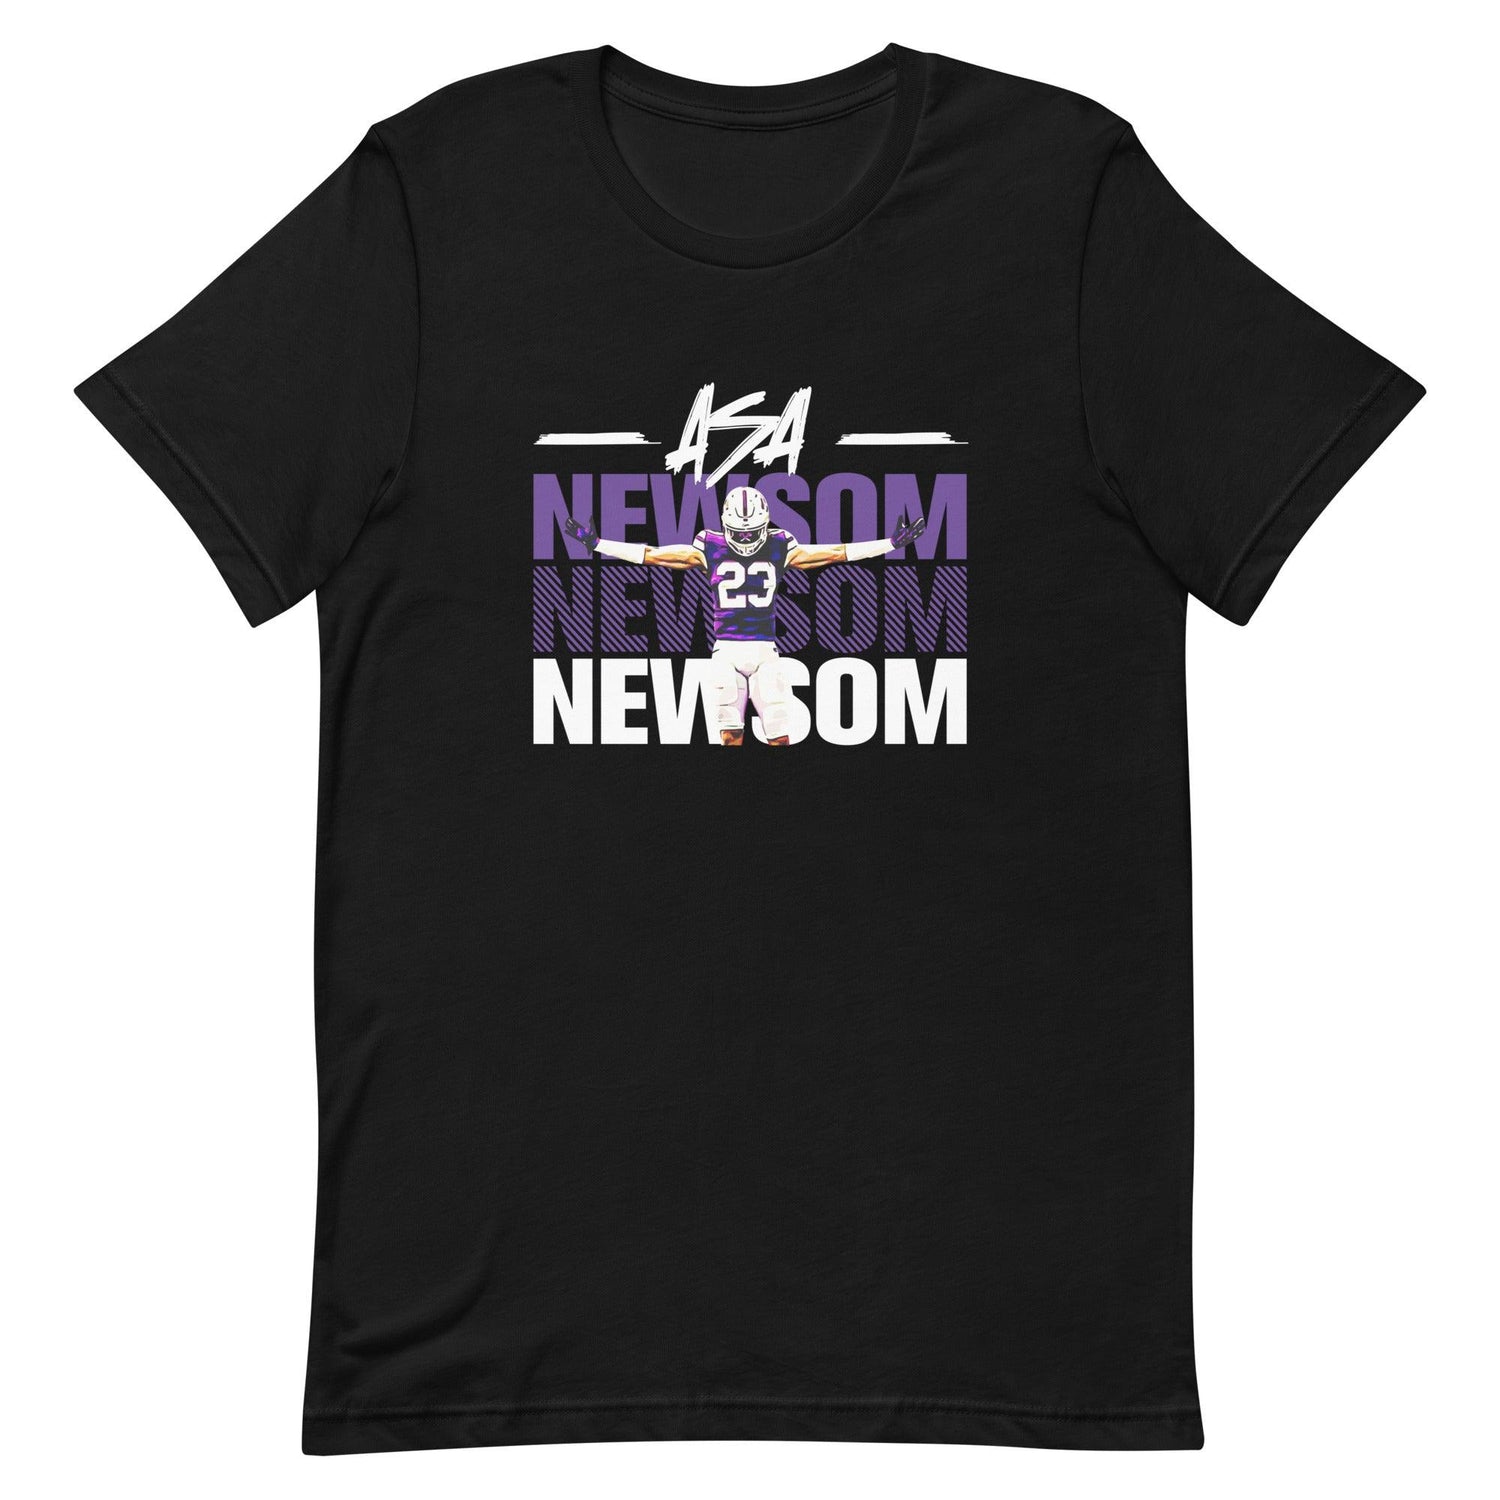 Asa Newsom "Gameday" t-shirt - Fan Arch